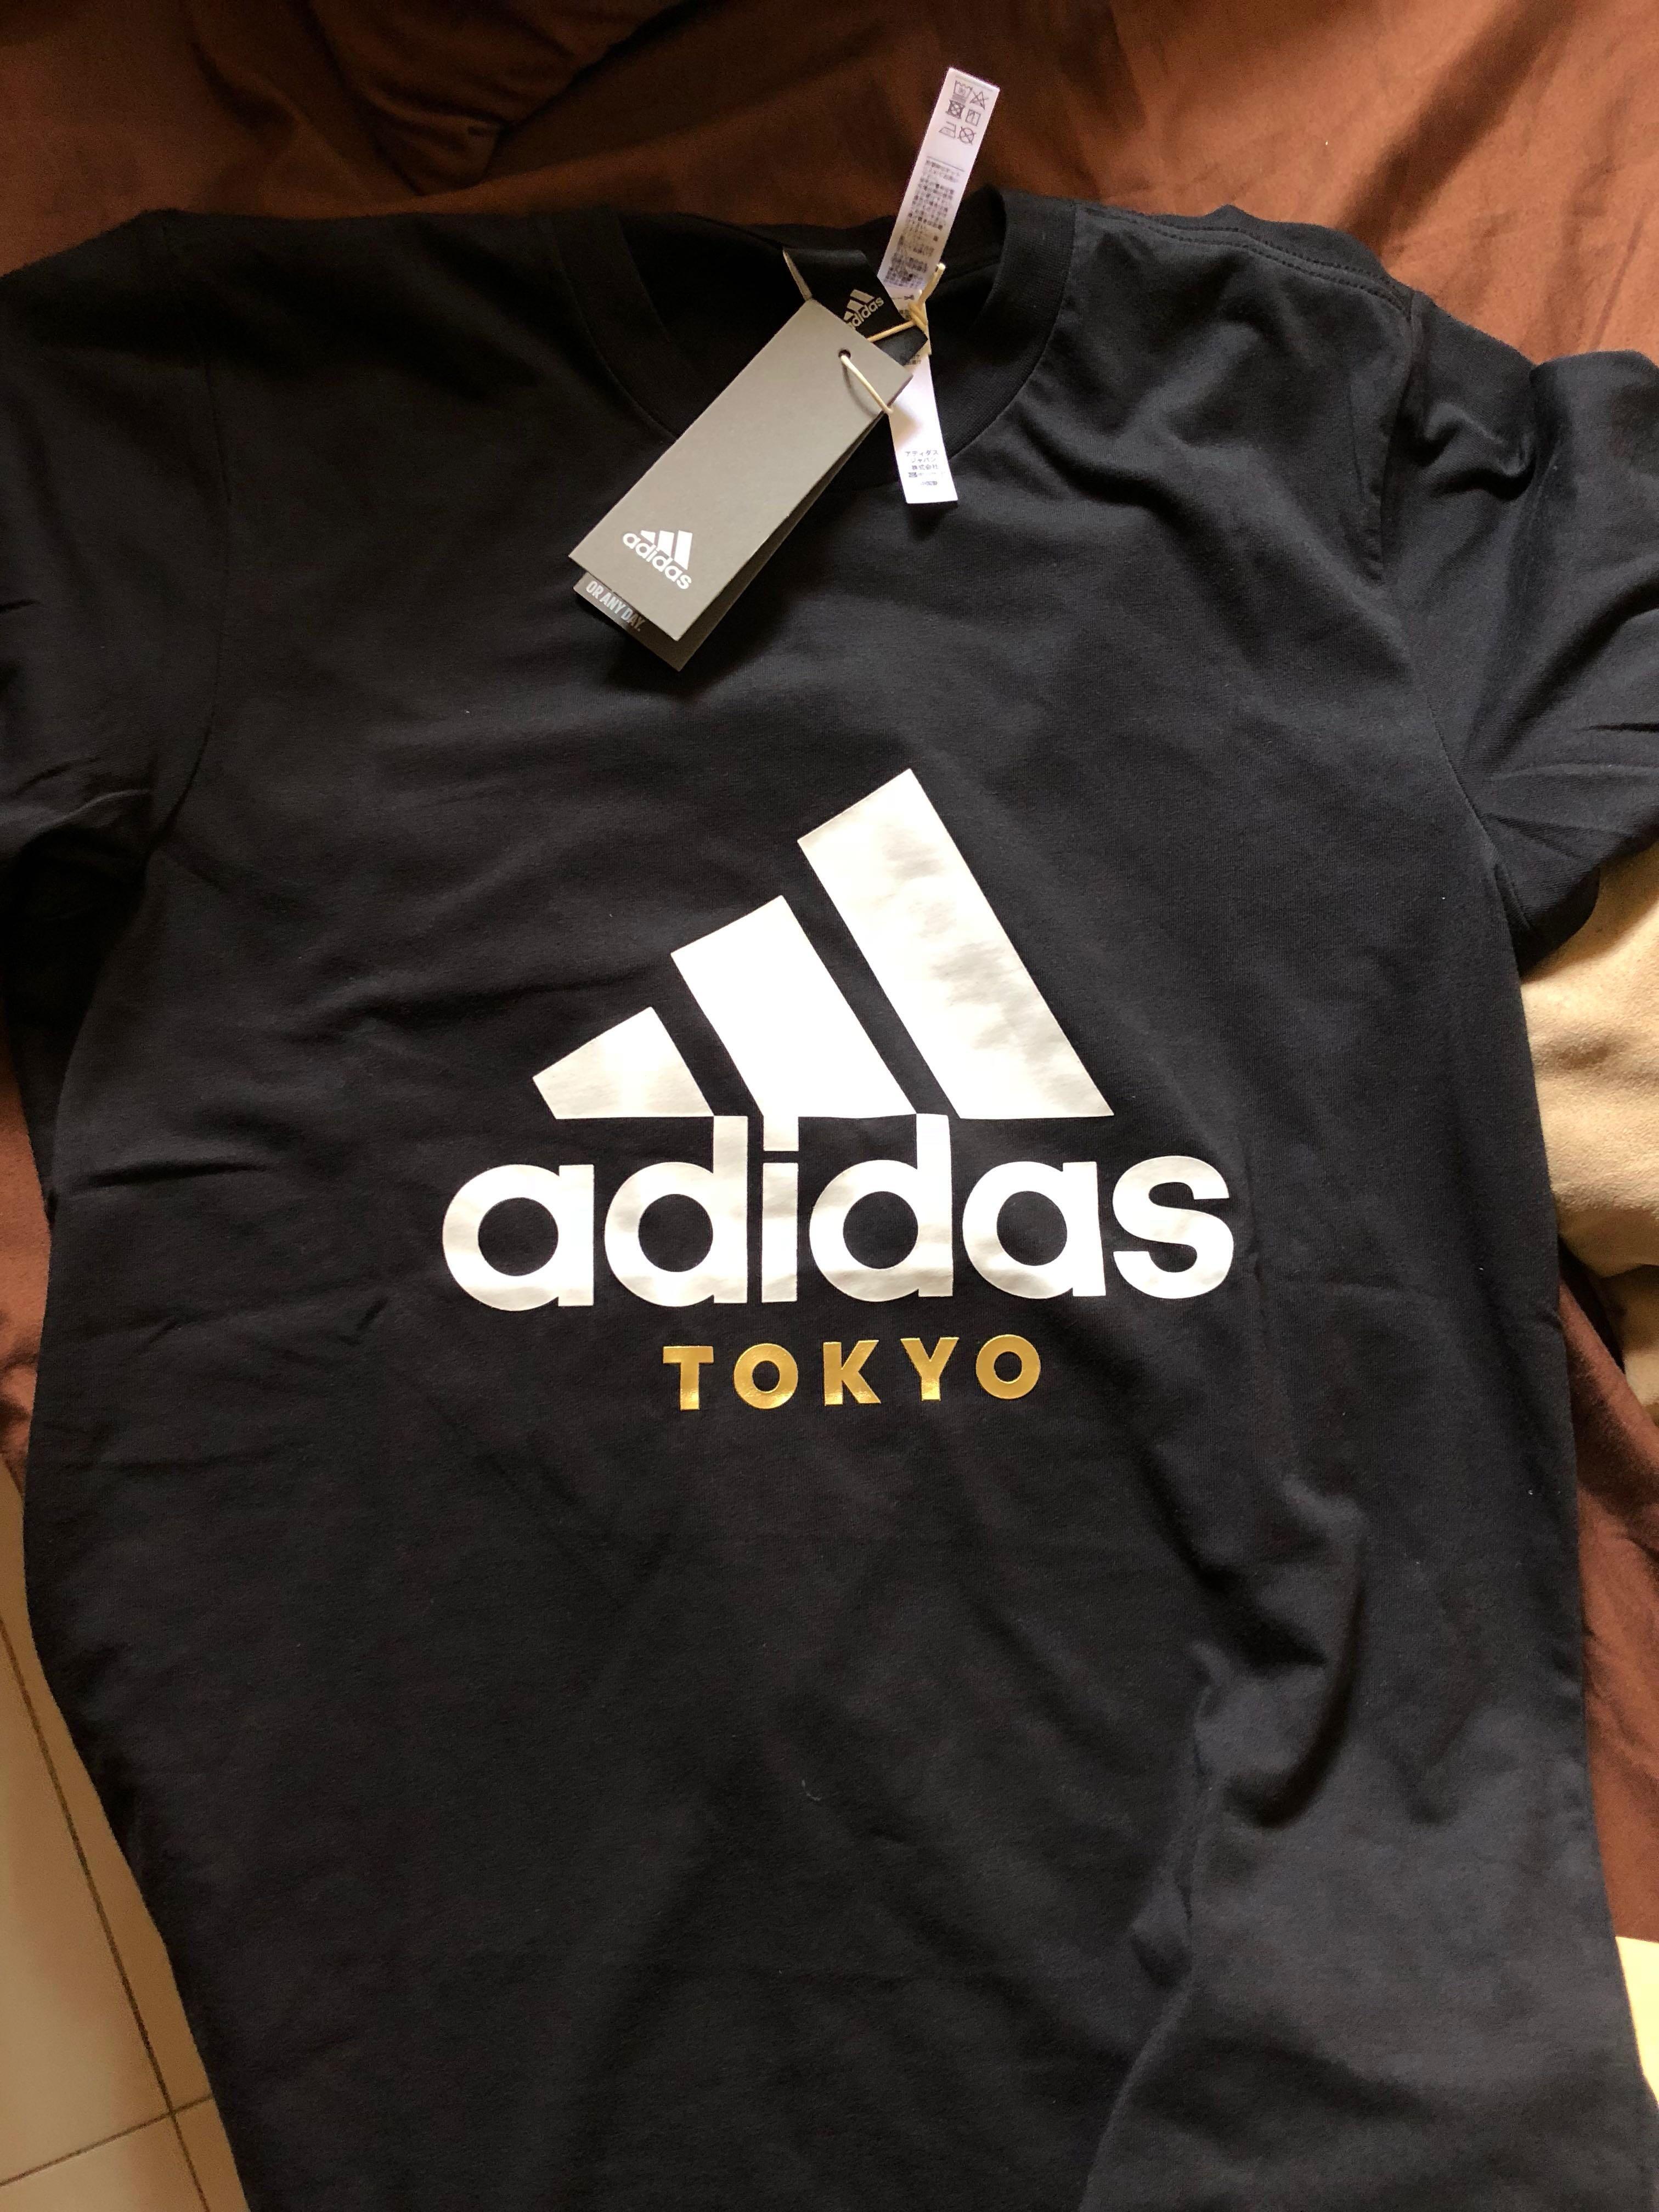 adidas t shirt tokyo